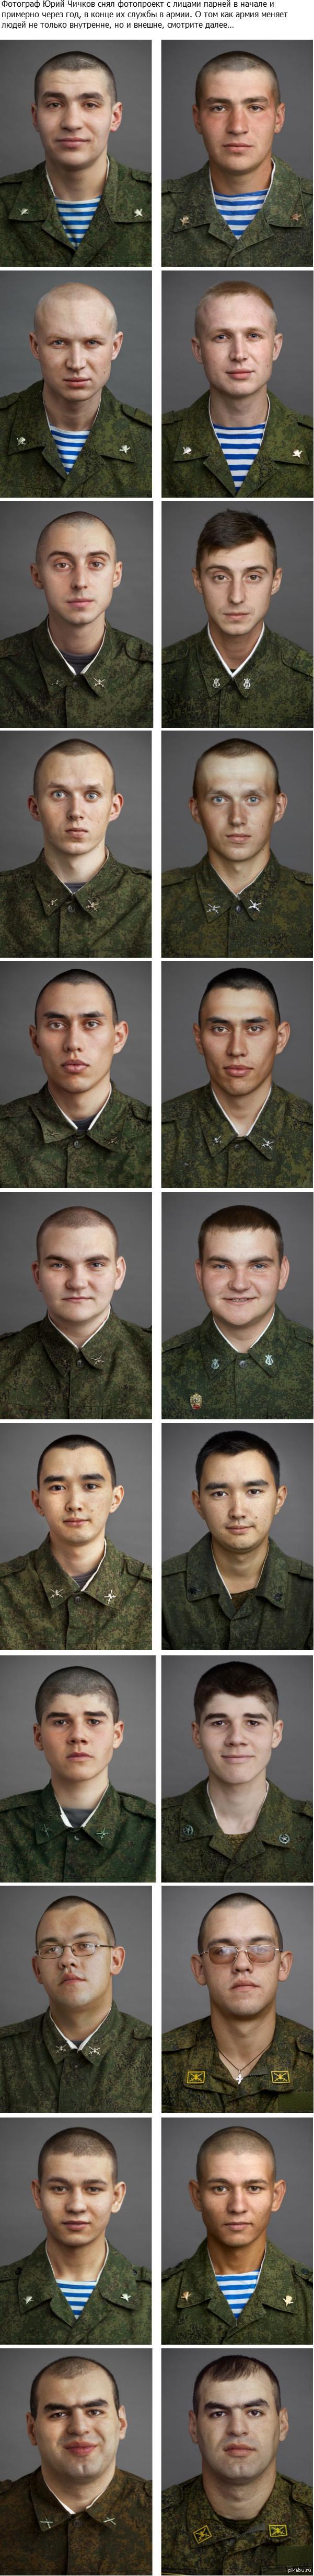 Люди до и после армии. До и после армии. Парни до армии и после фото. Снимки до и после армии.